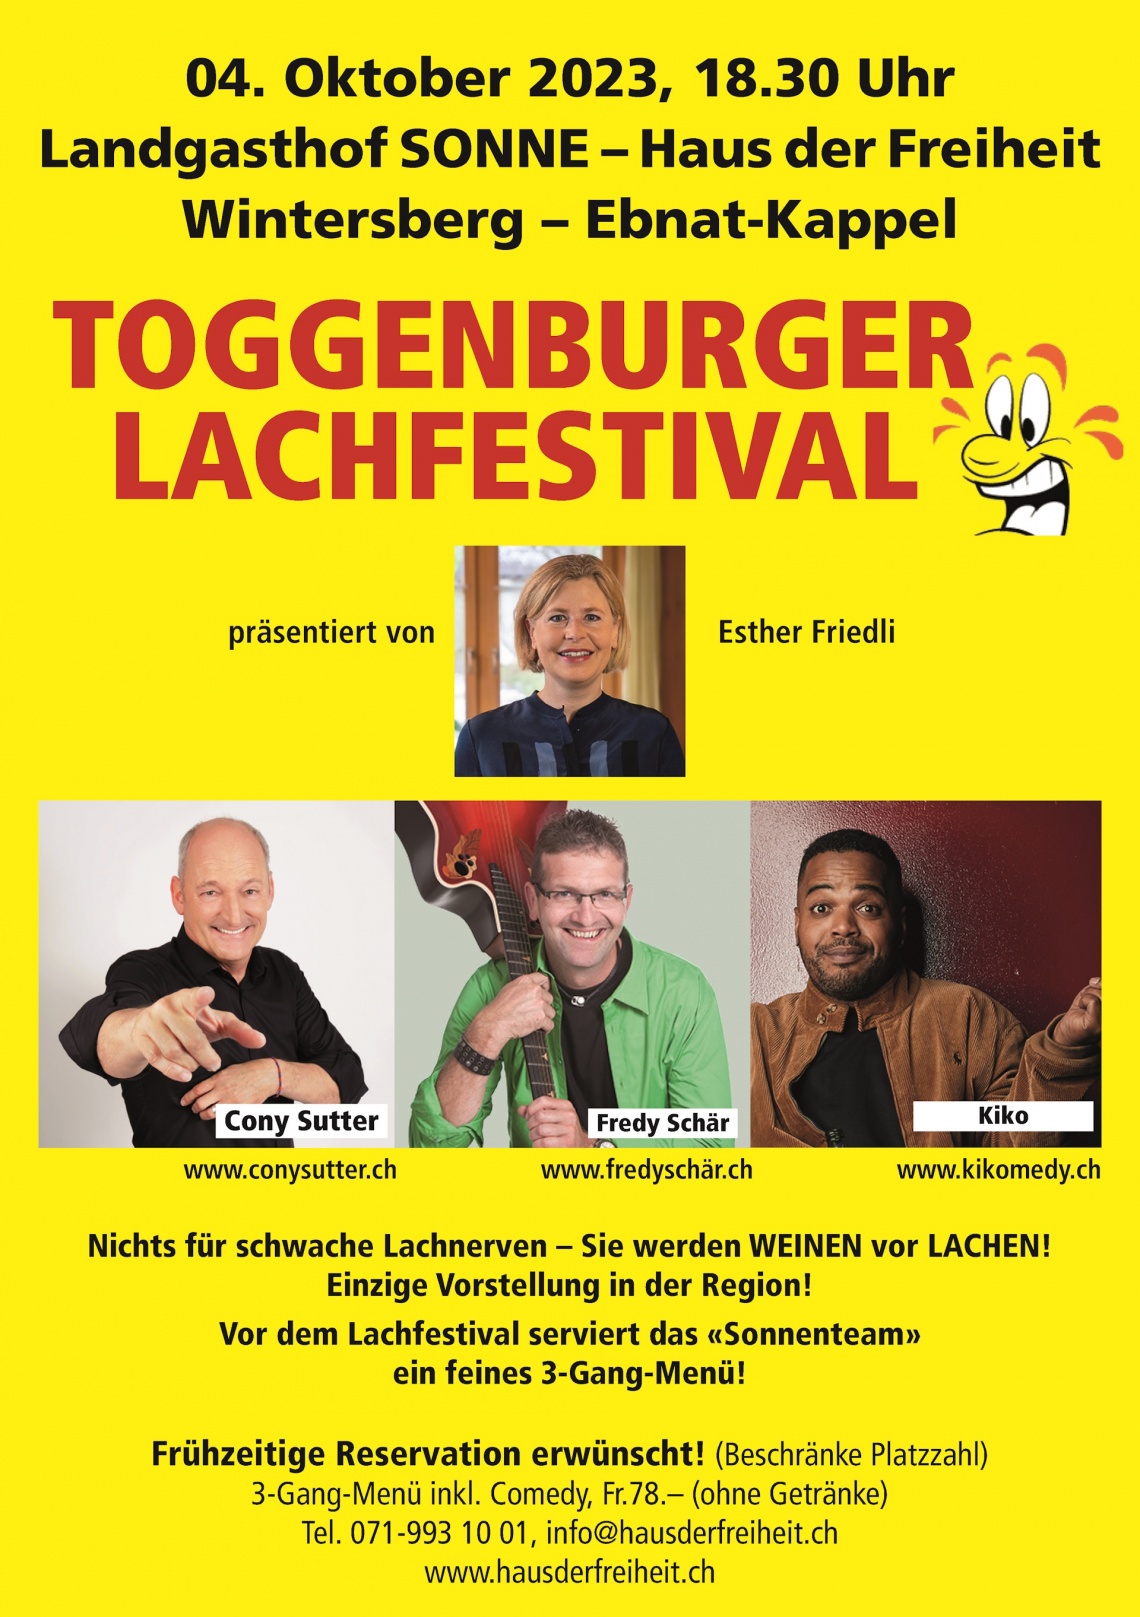 Zusatztermin wegen grosser Nachfrage: Toggenburger Lachfestival (Donnerstag, 05.10.2023 um  18.30 Uhr)